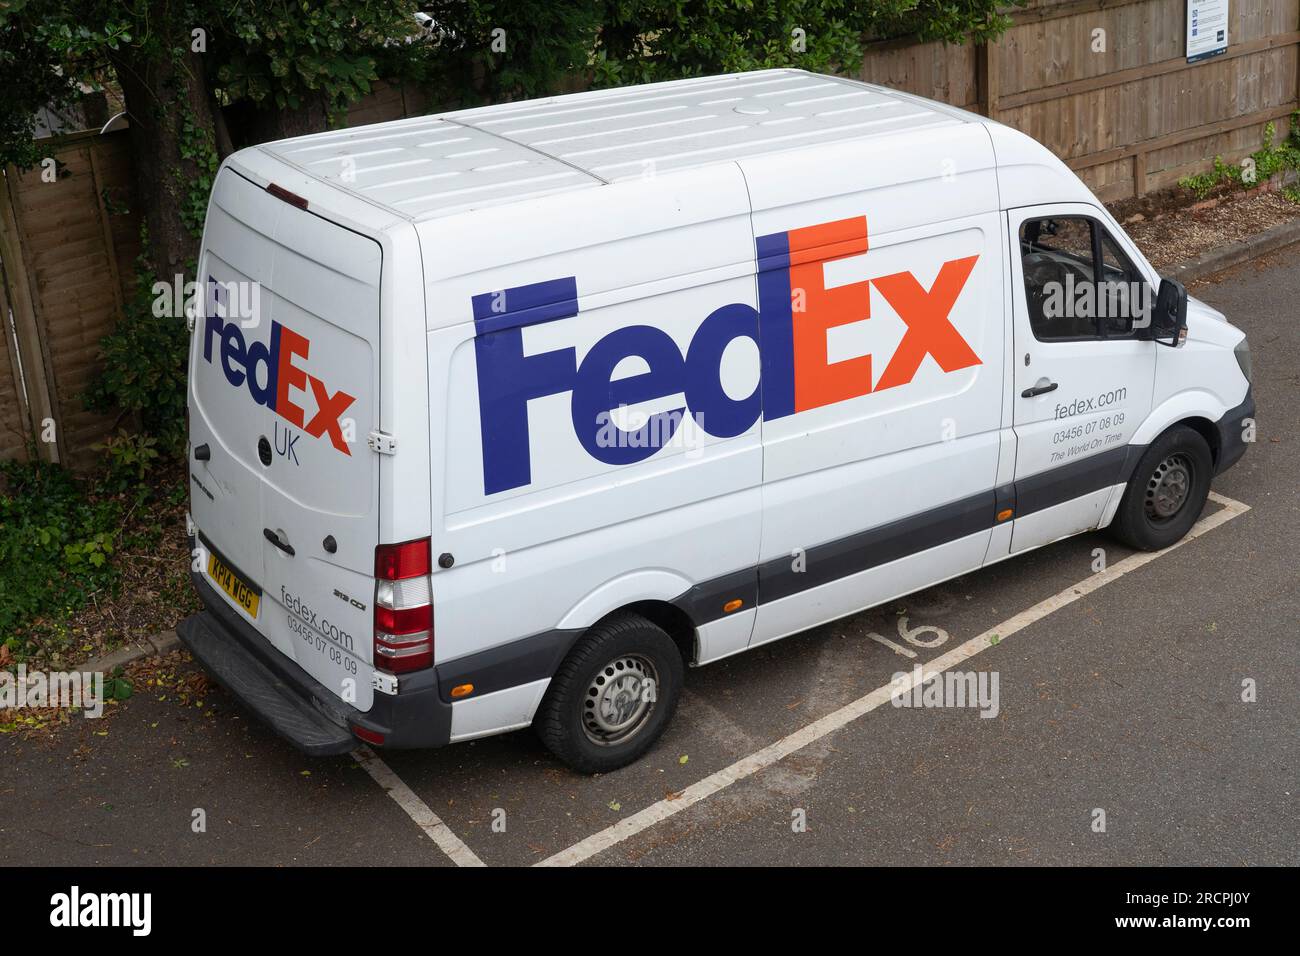 Fourgon de livraison blanc FedEx avec logo FedEx et décoration garé devant une maison en Angleterre. Thème : envois b2b, livraison express, livraison de colis Banque D'Images